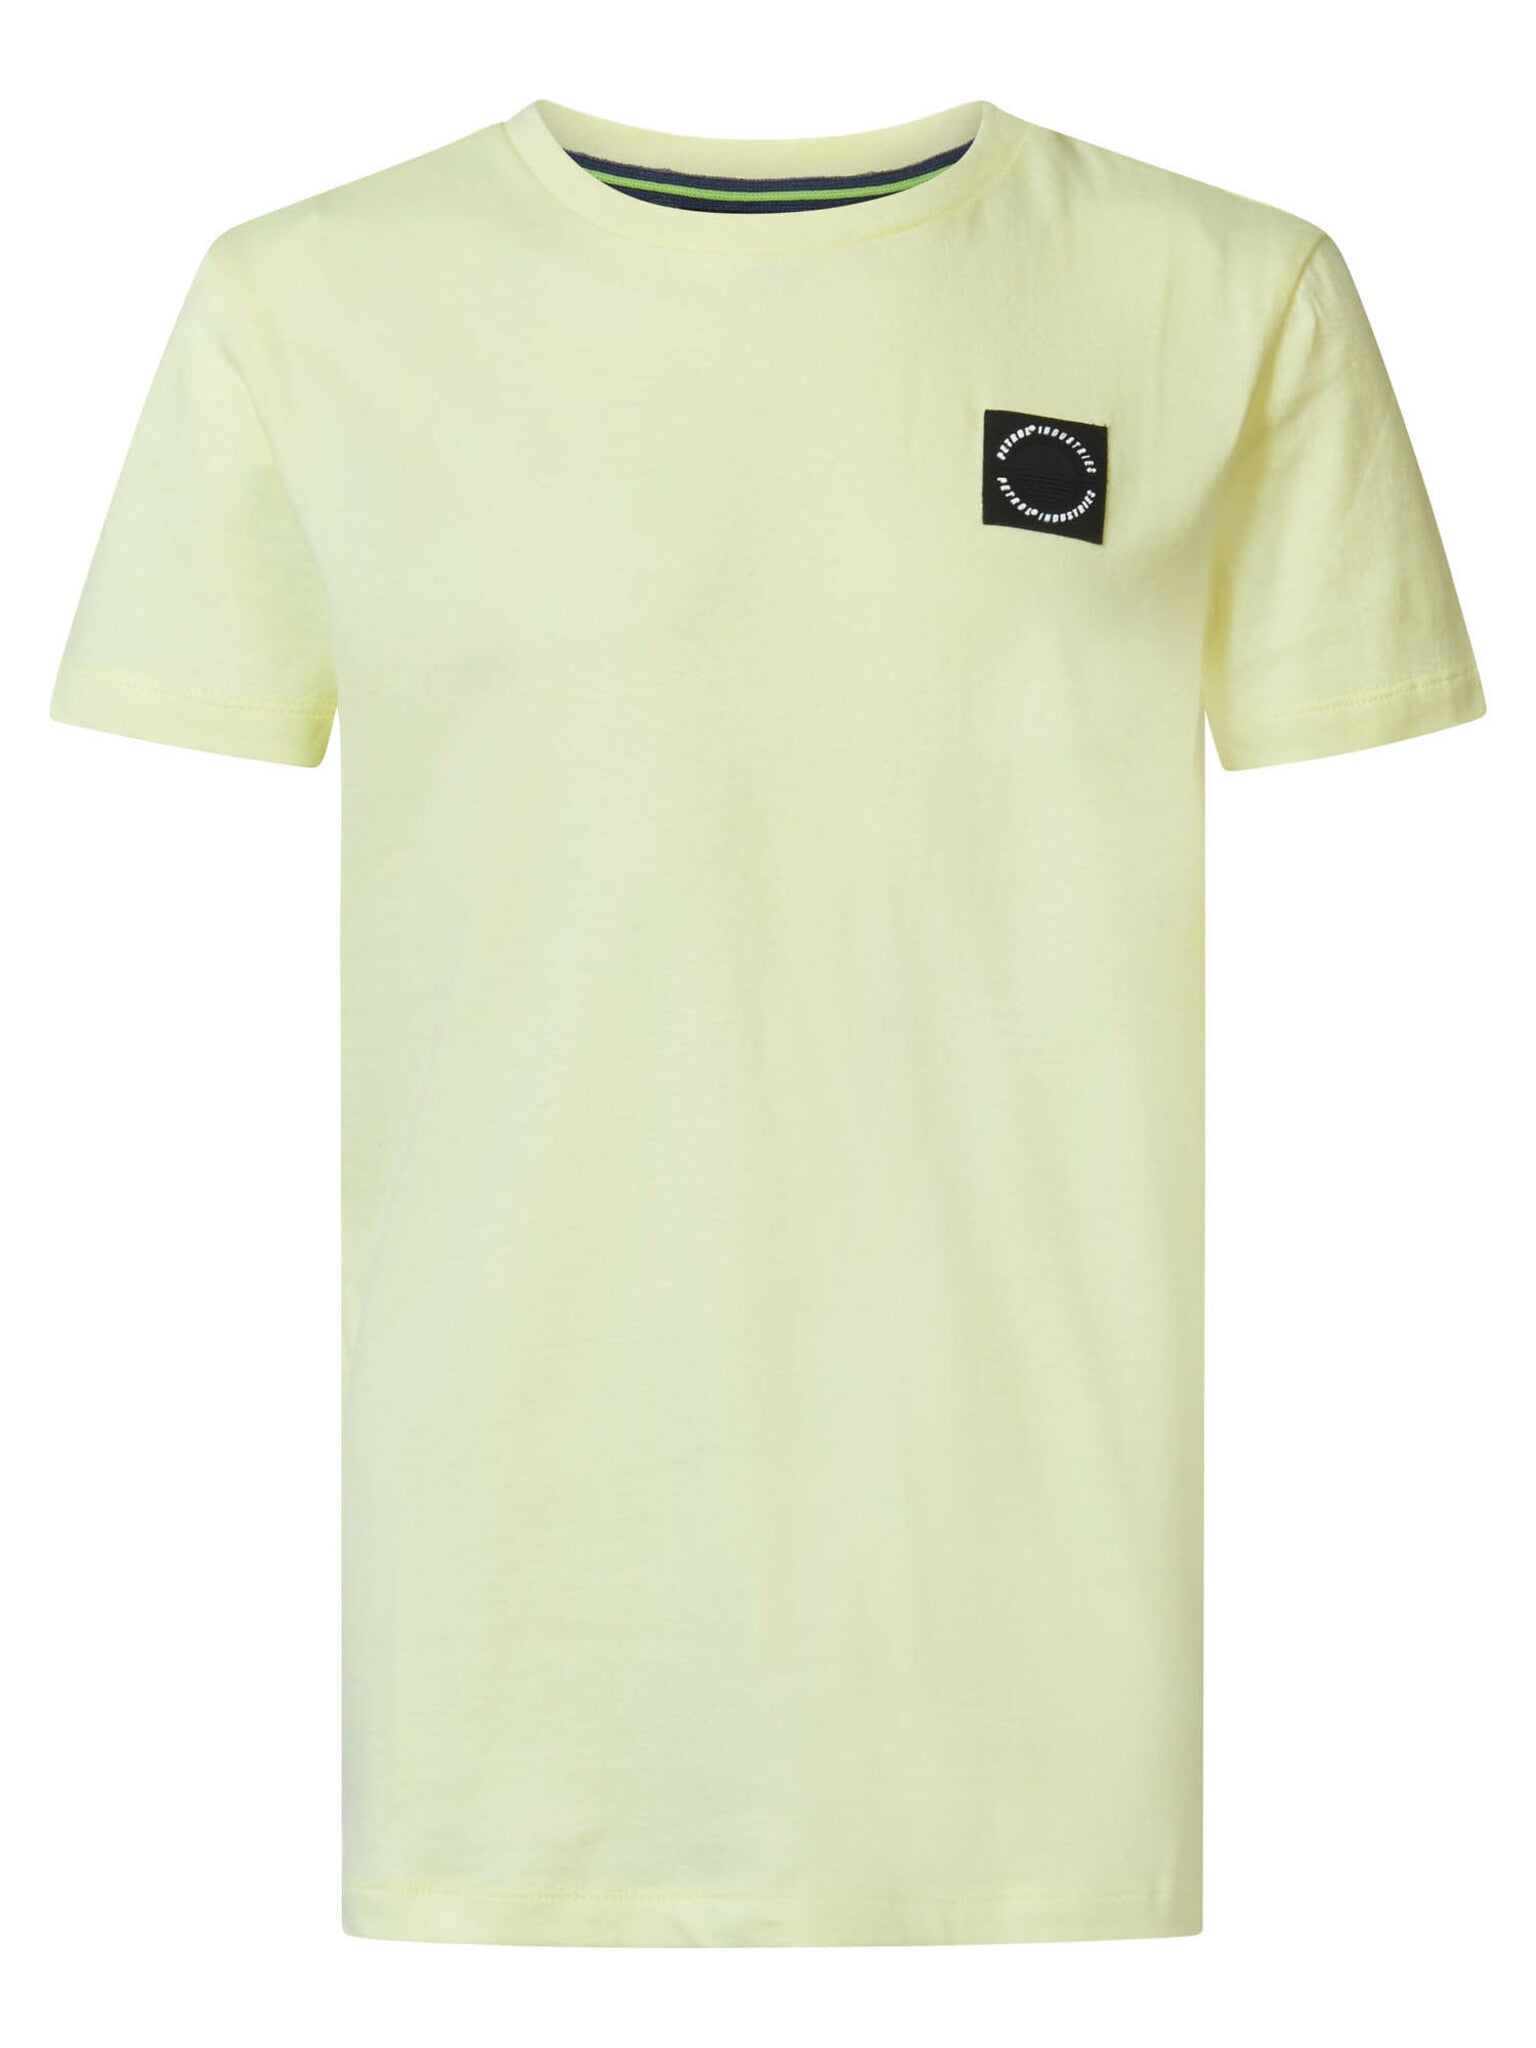 Jongens Boys T-Shirt SS Round Neck van Petrol in de kleur Lemon Yellow in maat 176.